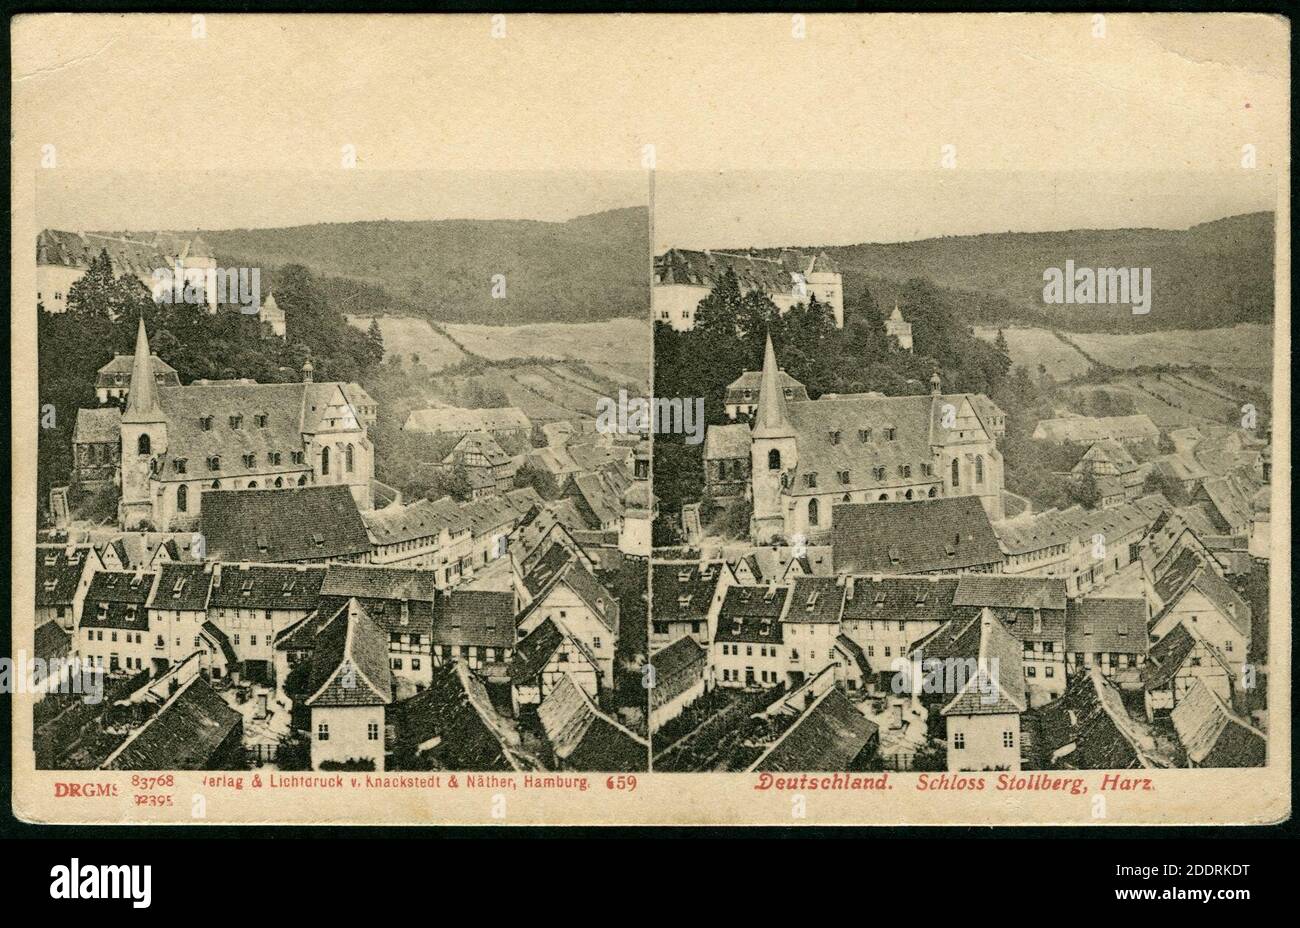 Knackstedt & Näther Stereoskopie 0659 Deutschland, Schloss Stollberg, Harz, Bildseite, Blick von höherem Punkt in der Stubengasse vorbei am Saigerturm über die Dächer am Markt zur St.-Martini-Kirche um 1900. Stockfoto